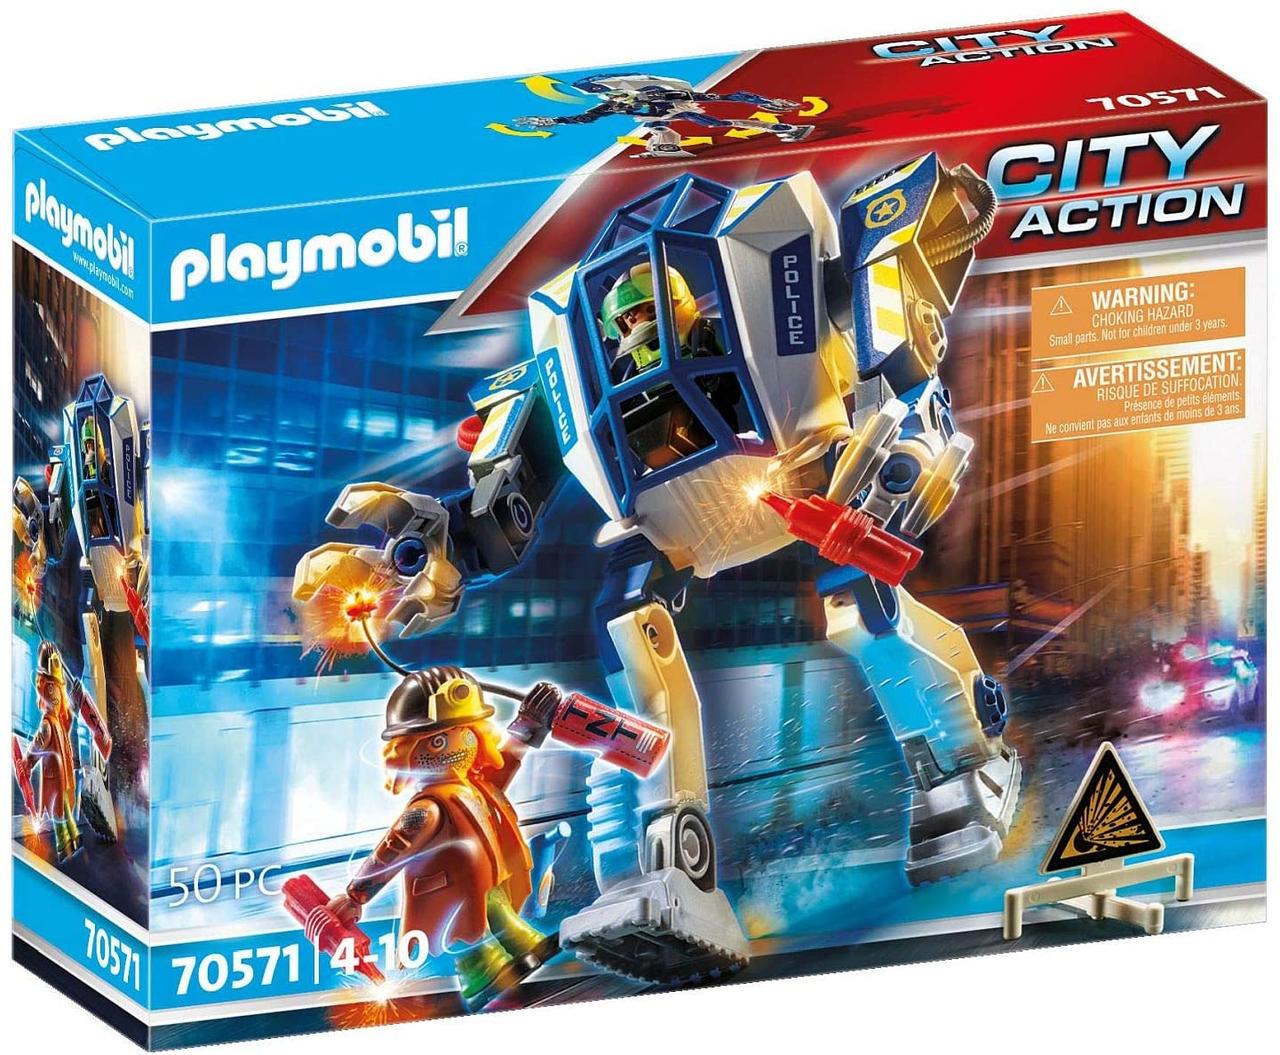 Плеймобіл 70571 Полицеюський робот Playmobil City action